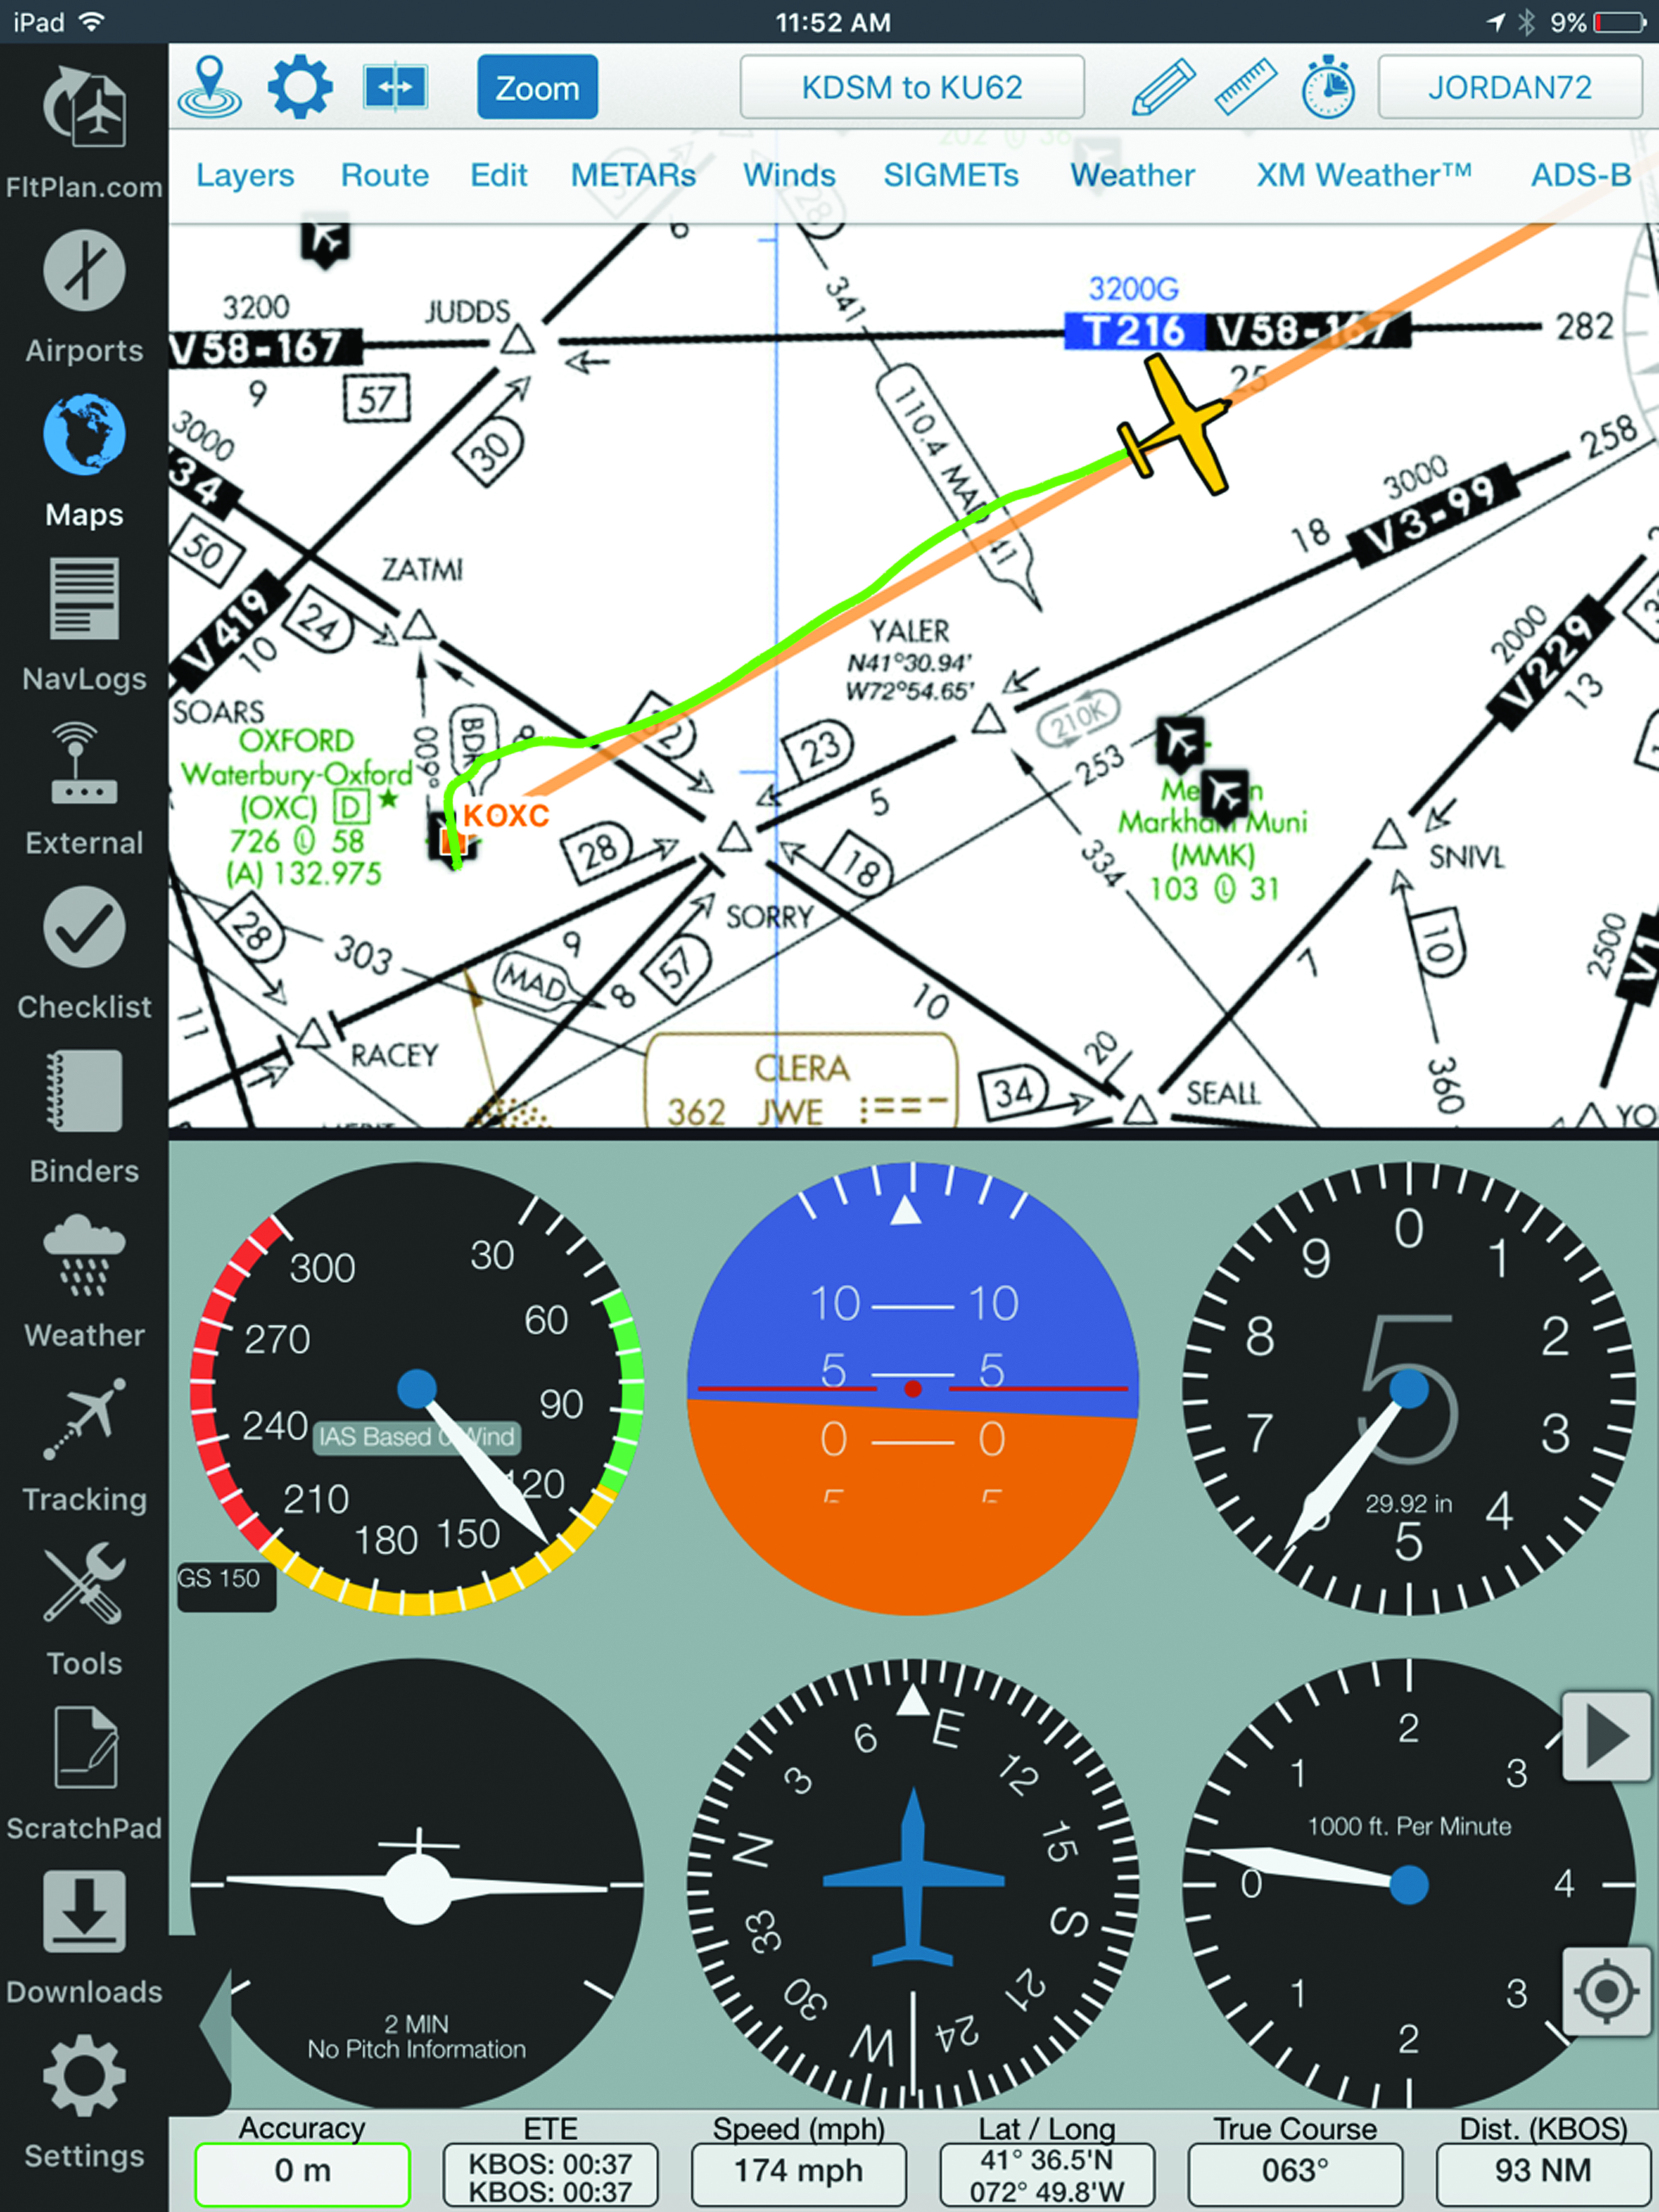 Flight Sim Charts